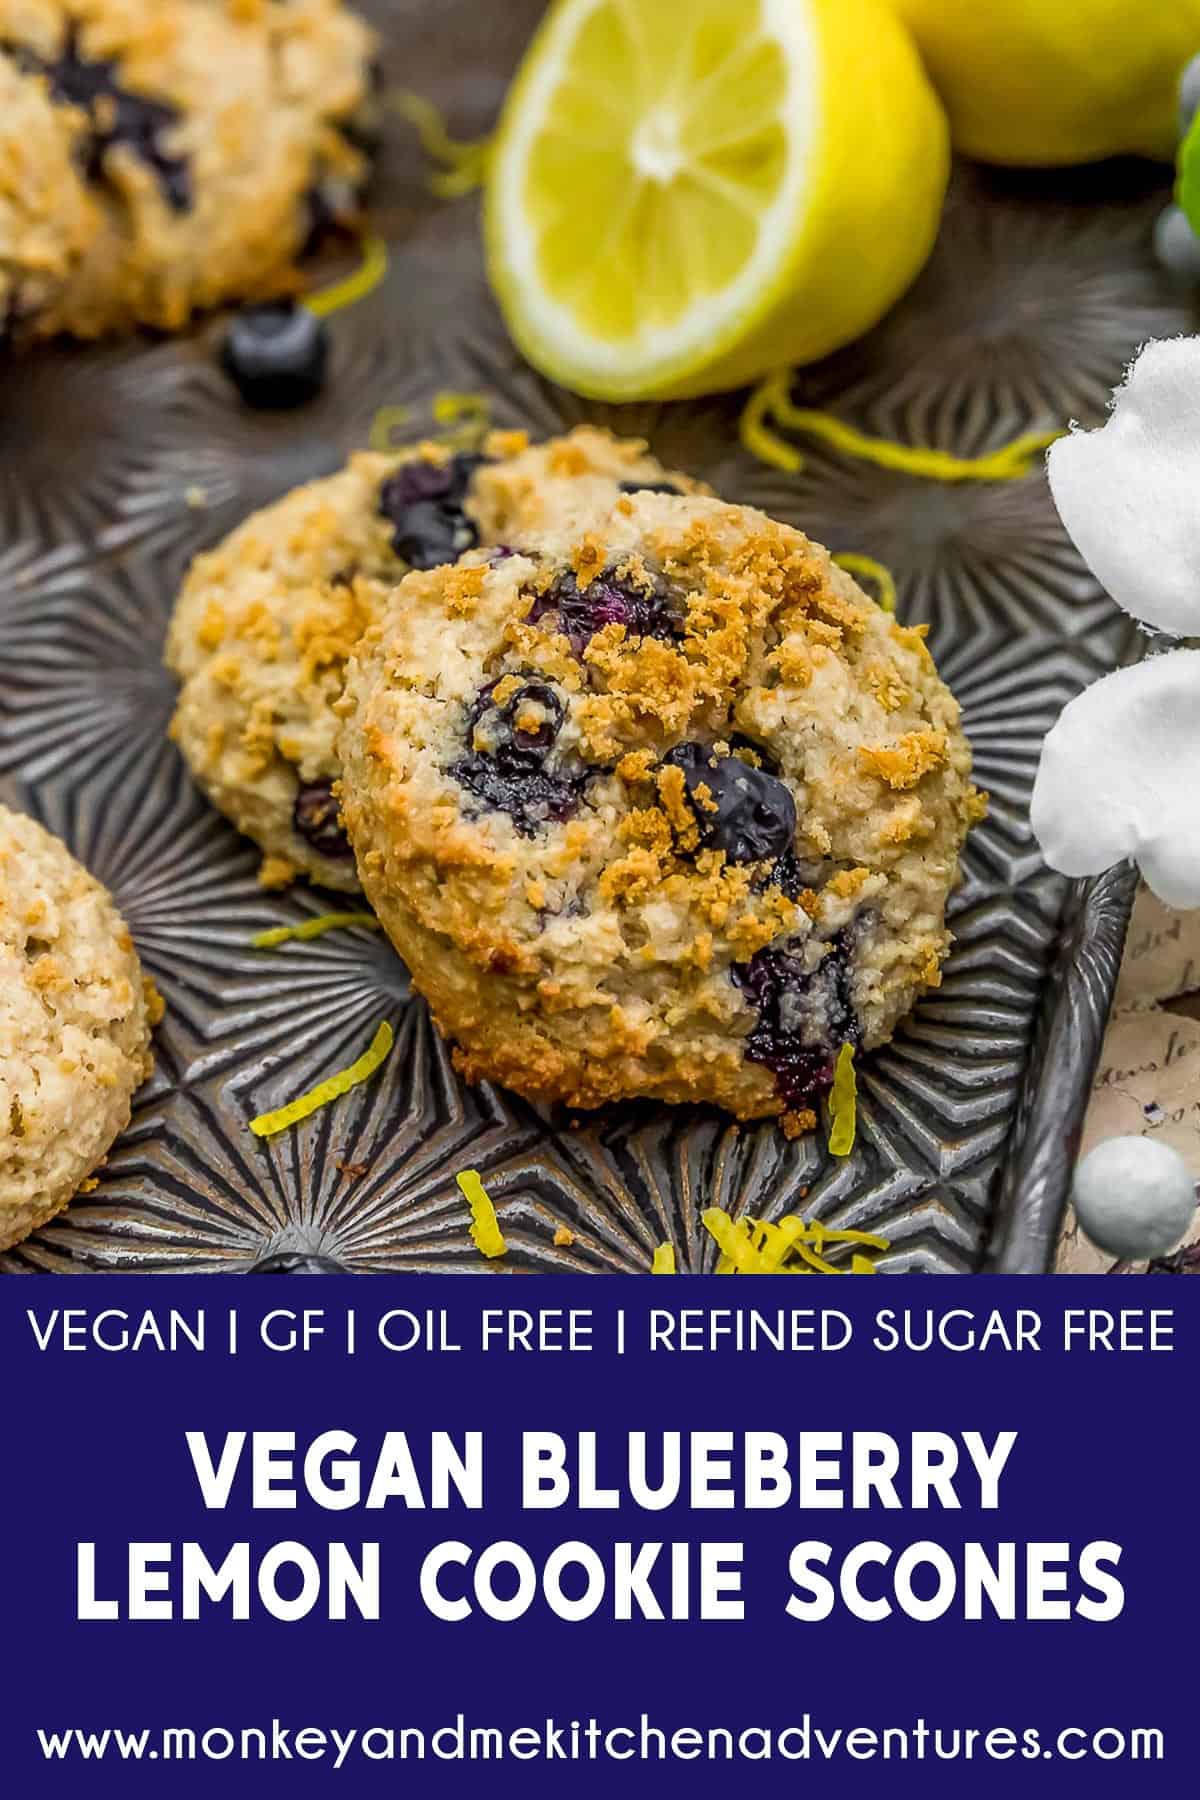 Vegan Blueberry Lemon Cookie Scones with text description